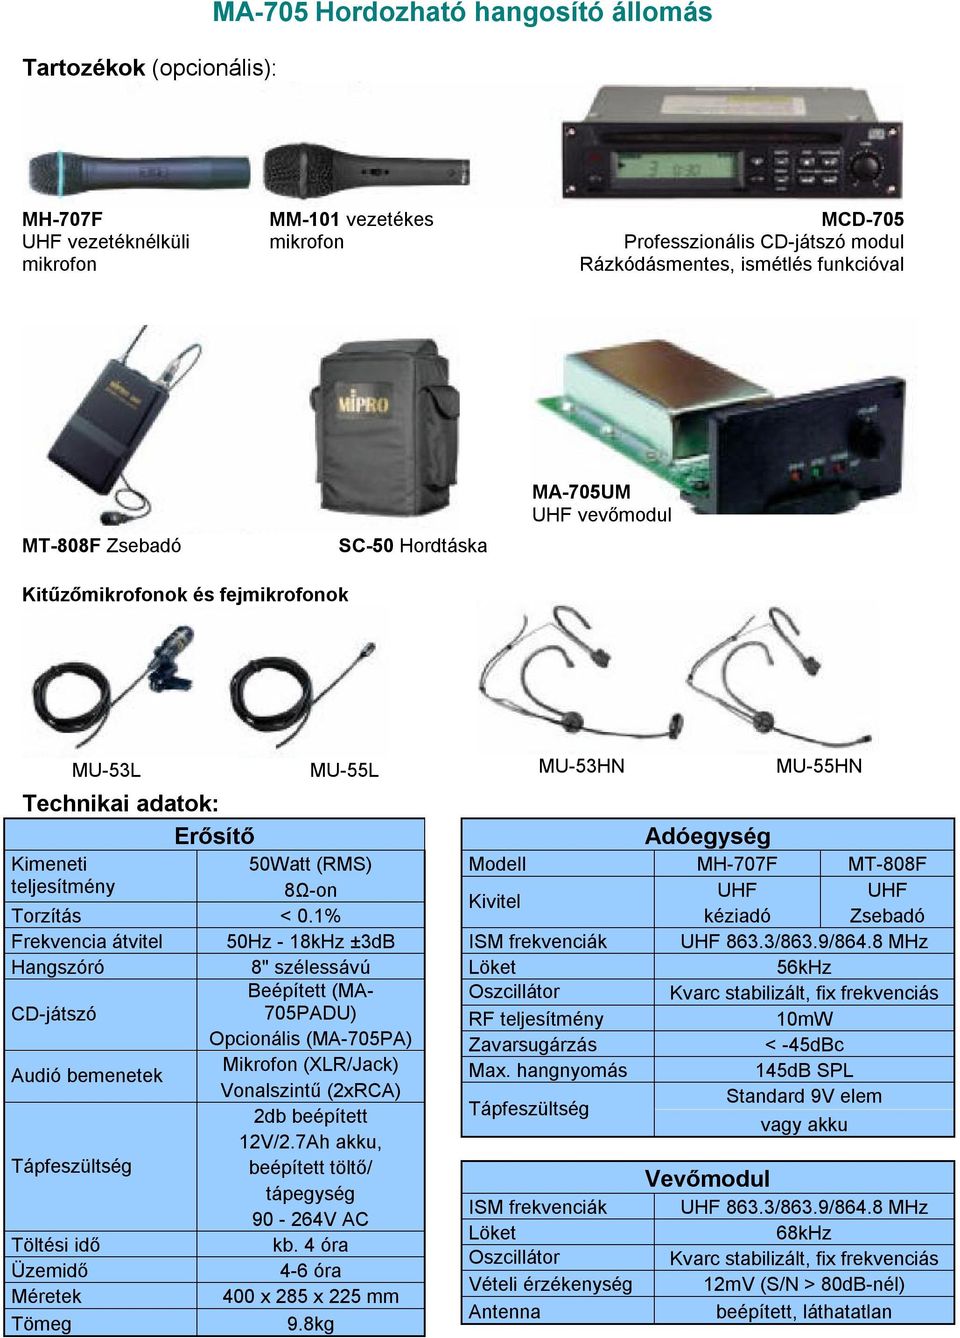 1% Frekvencia átvitel 50Hz - 18kHz ±3dB Hangszóró 8" szélessávú Beépített (MA- CD-játszó 705PADU) Opcionális (MA-705PA) Mikrofon (XLR/Jack) Audió bemenetek Vonalszintű (2xRCA) 2db beépített 12V/2.